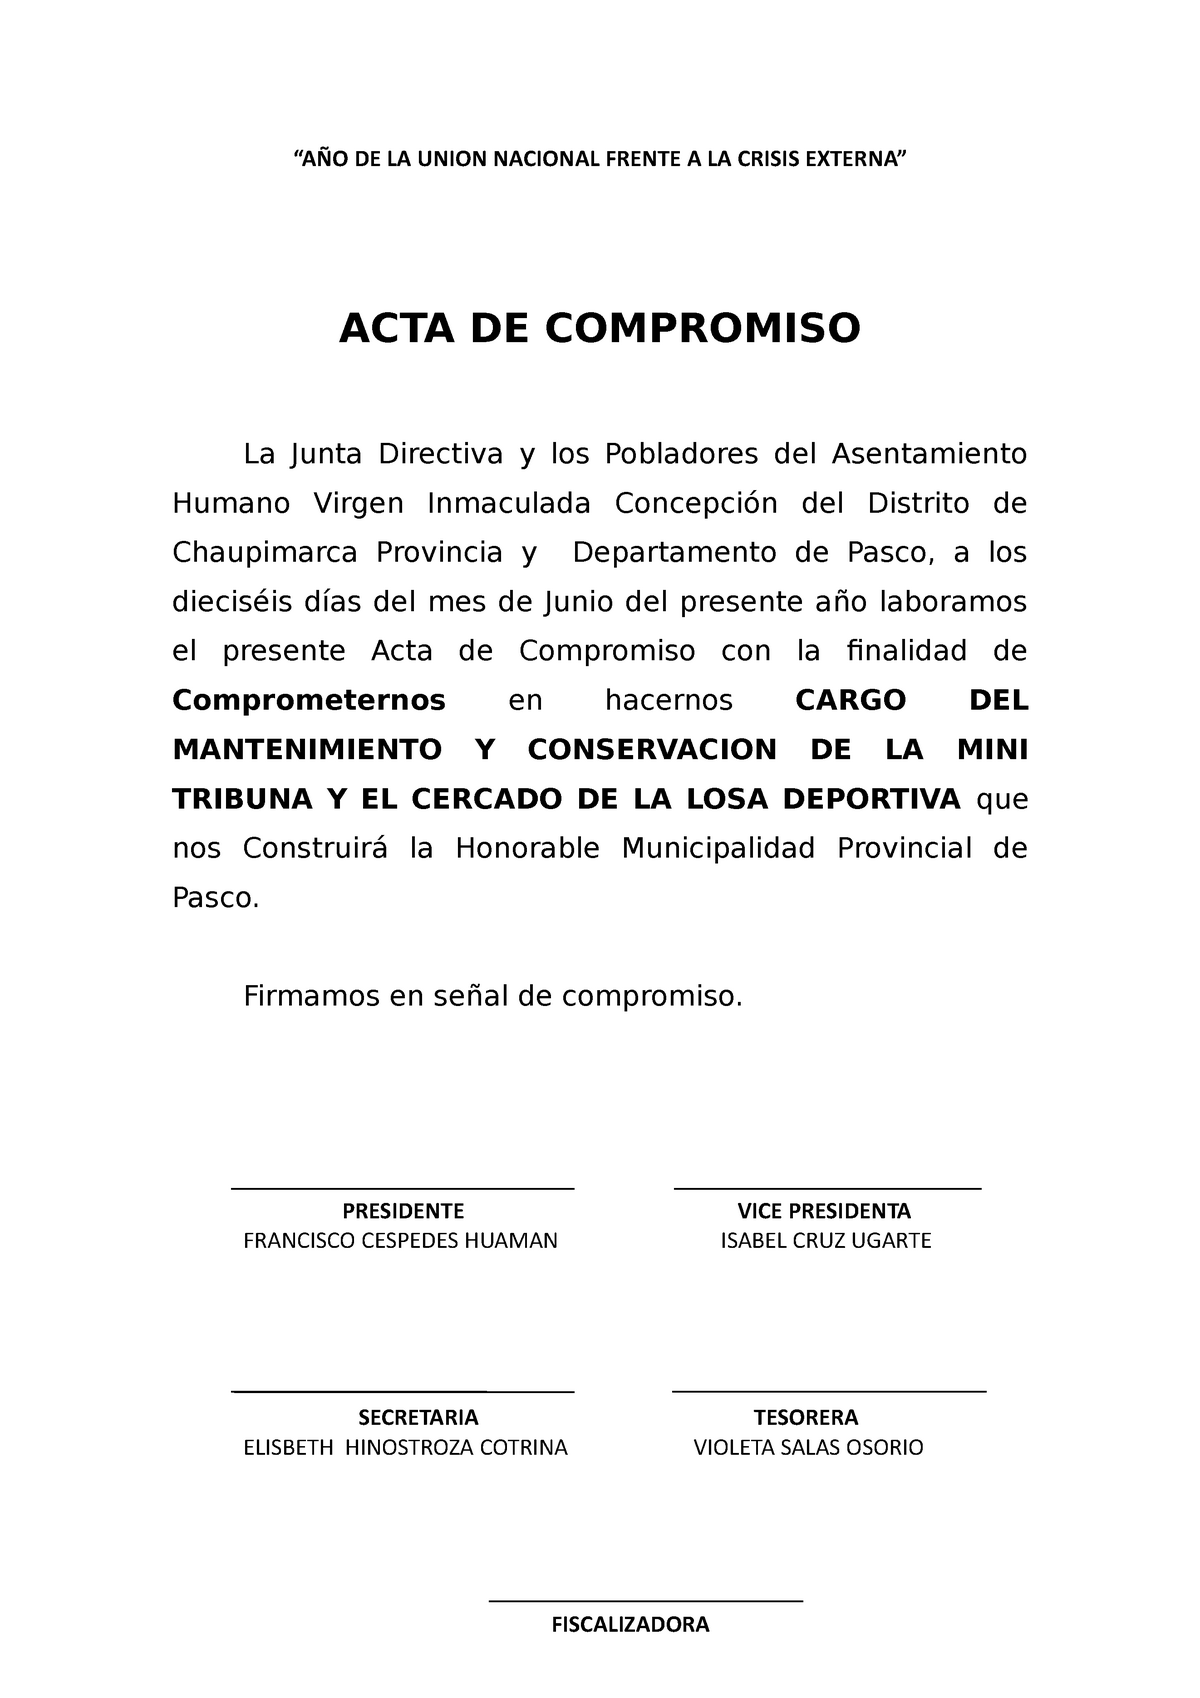 ACTA DE Compromiso modelo de ejemplo de acta de compromiso “AÑO DE LA UNION NACIONAL FRENTE